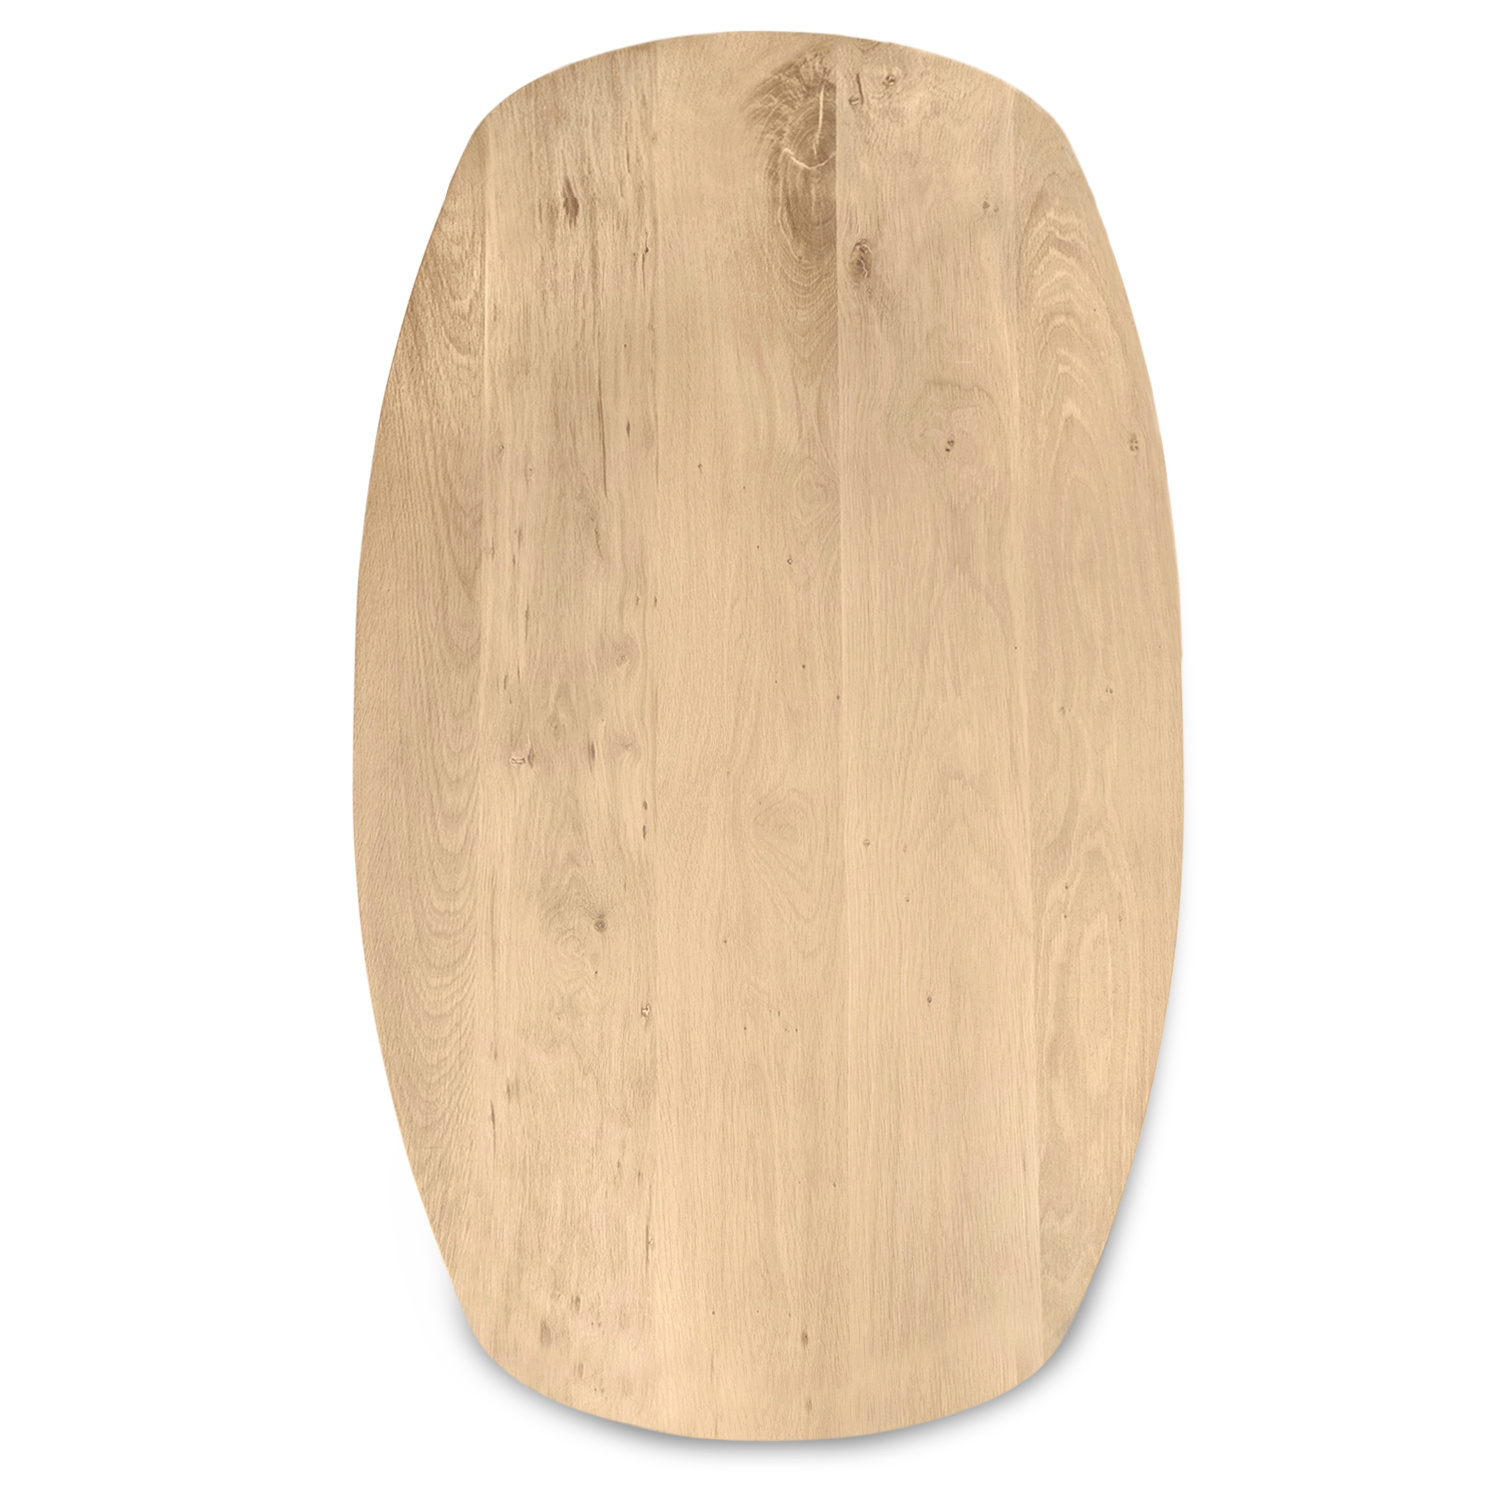  Deens ovaal eiken tafelblad - 3 cm dik (1-laag) - Diverse afmetingen - extra rustiek Europees eikenhout - met extra brede lamellen (circa 14-20 cm) - verlijmd kd 8-12%